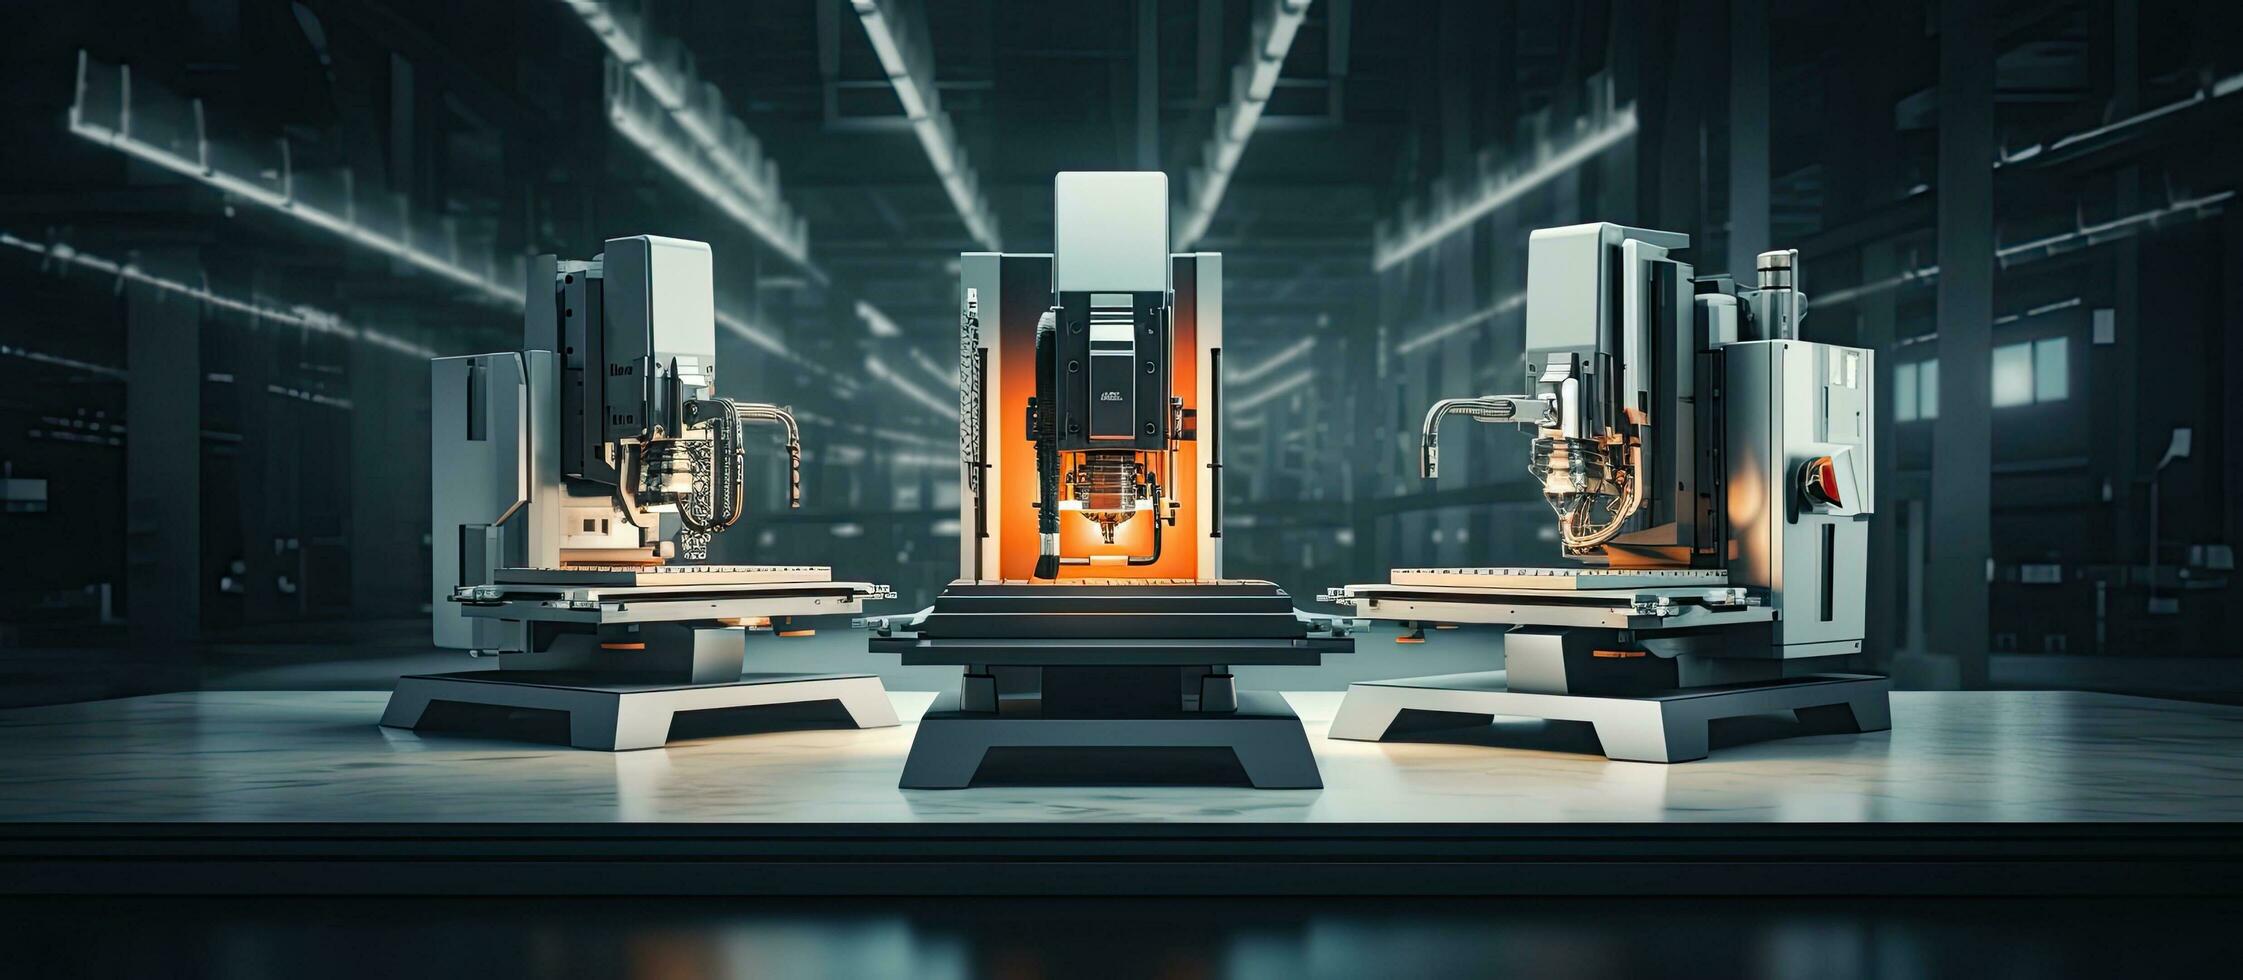 moinhos com 5 eixo cnc máquinas para Projeto usando uma girar cabeça mesa e metalurgia industrial superfície foto